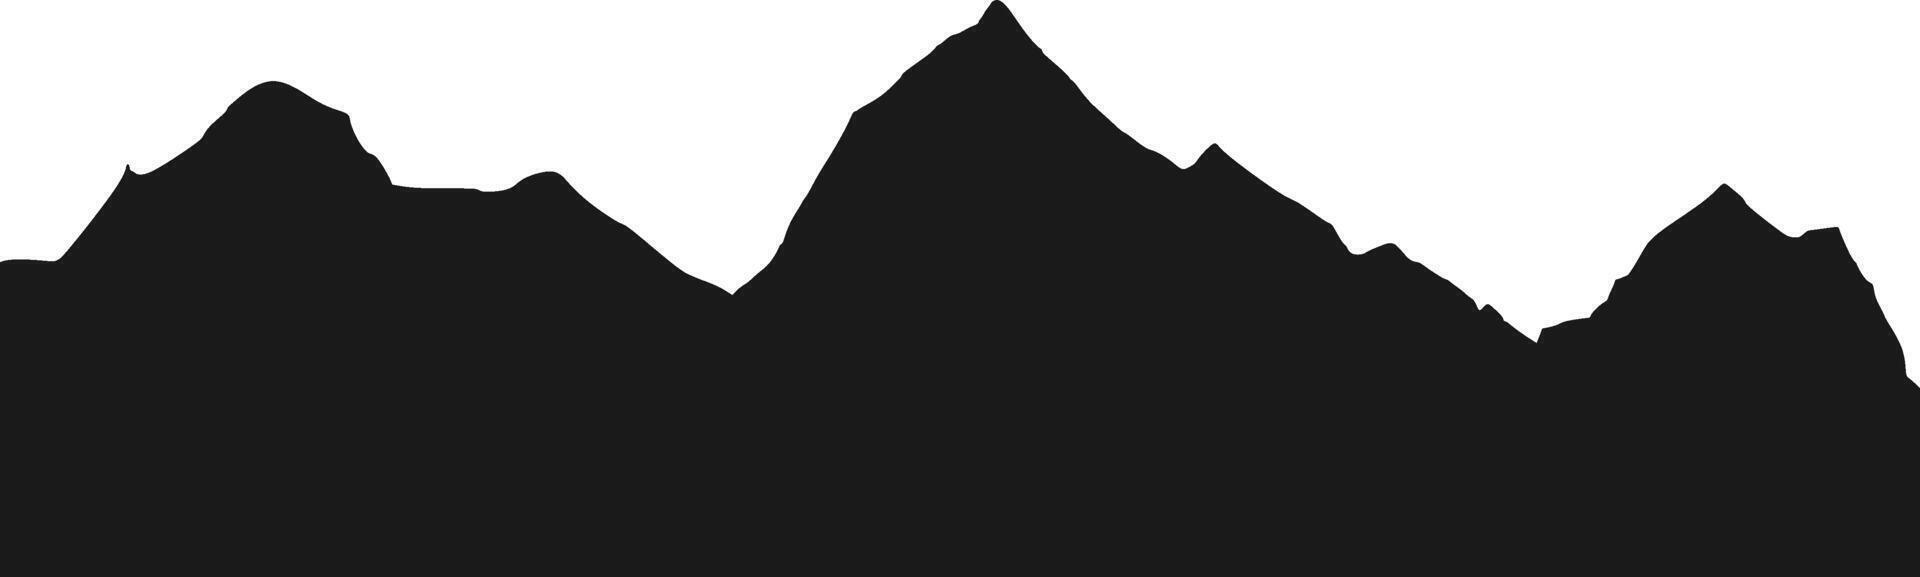 silhouette de la chaîne de montagnes vecteur